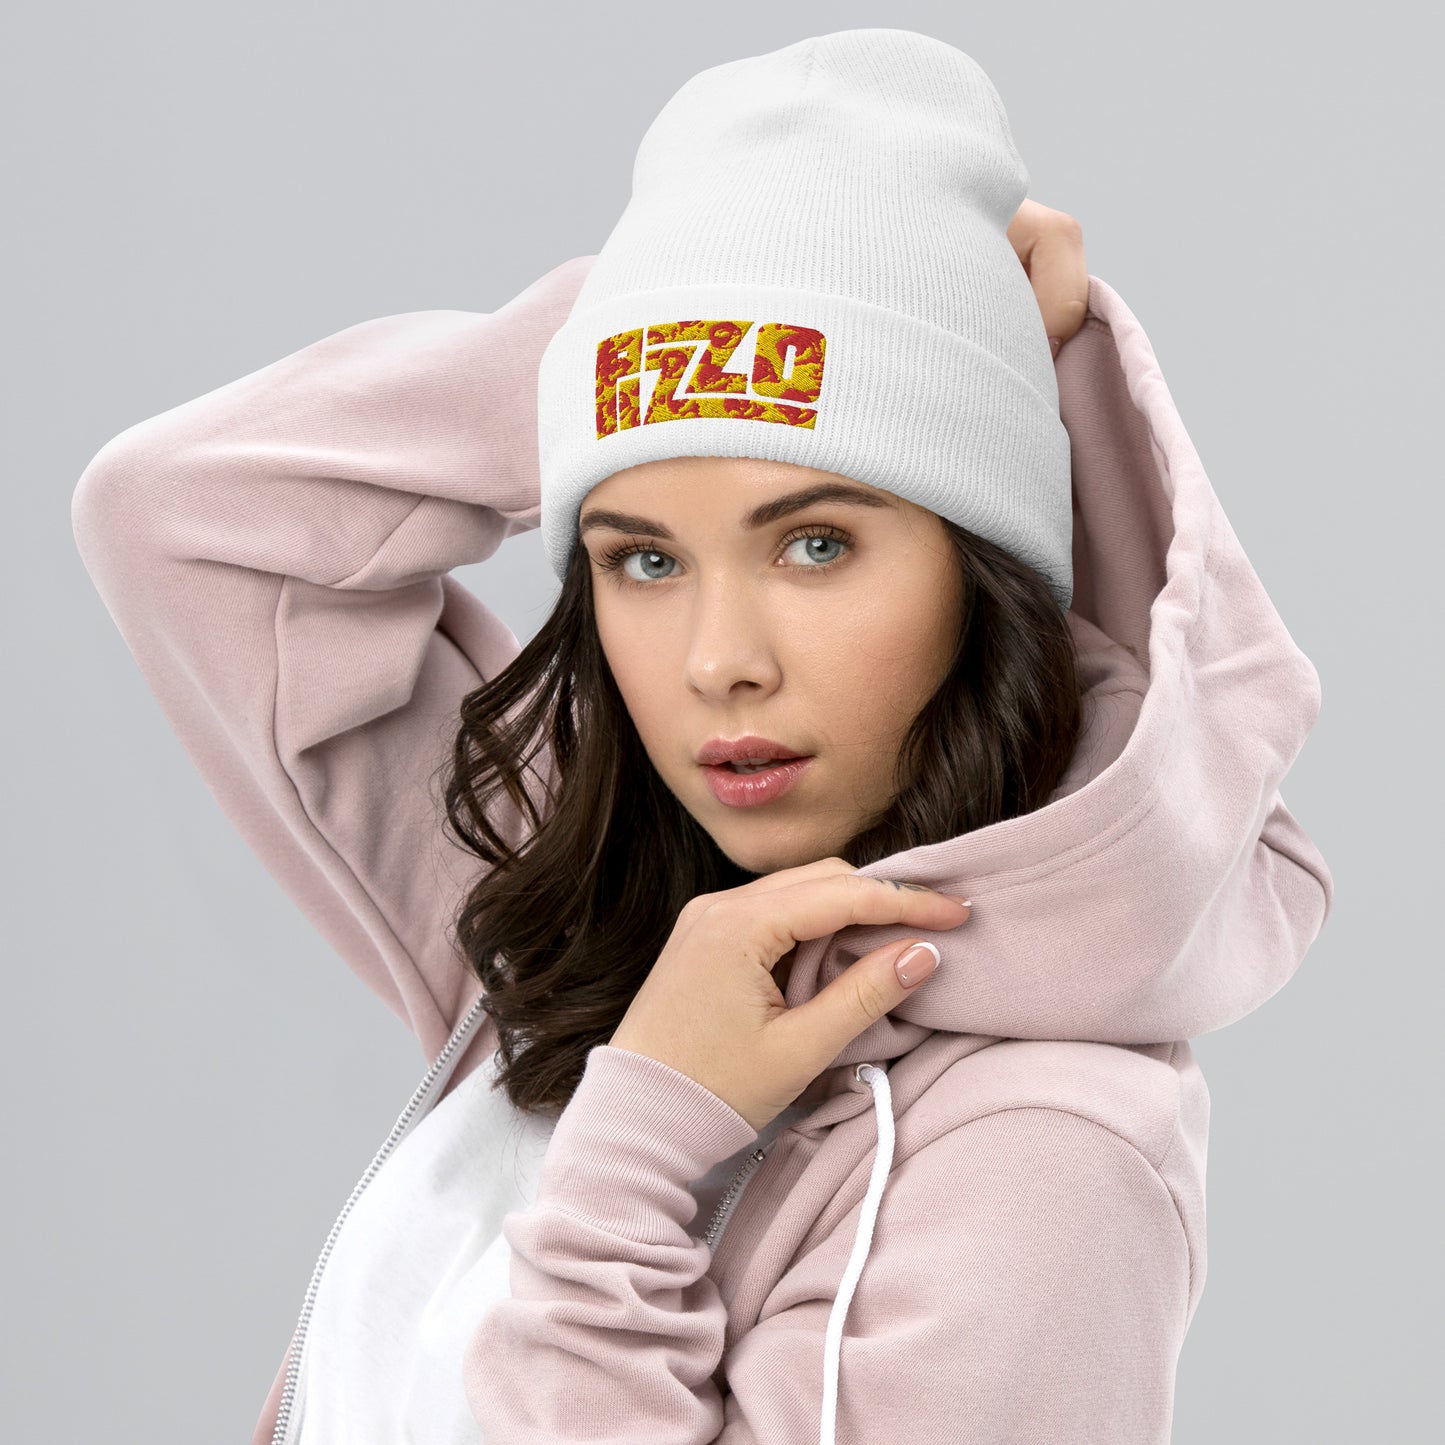 Pizzo Lizzo Pizza Lizzo Merch Lizzo Gift Song Lyrics Lizzo Cuffed Beanie Next Cult Brand